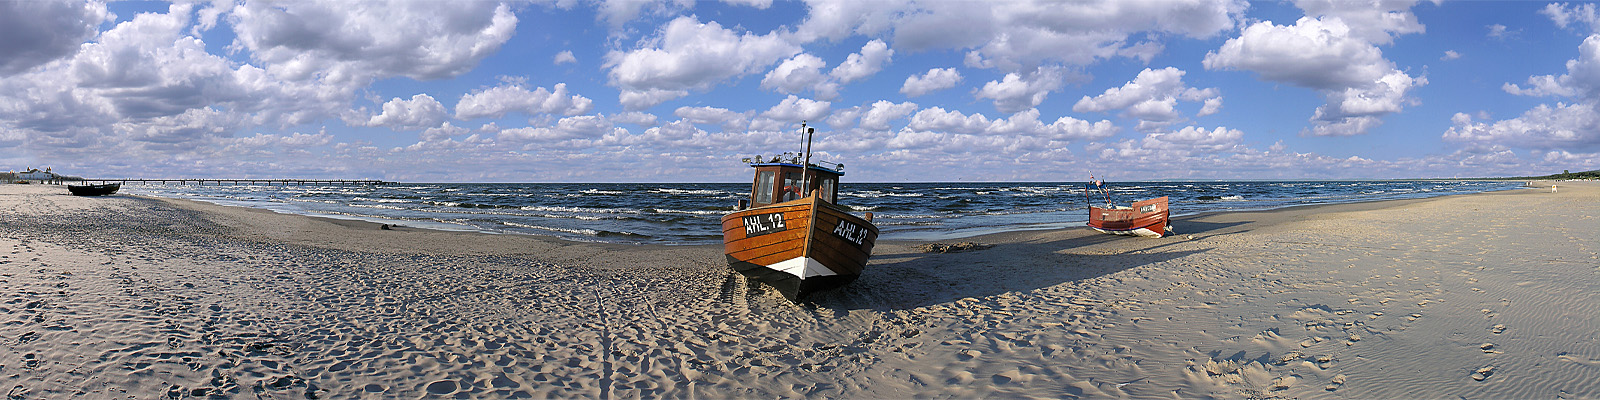 Panorama: Ahlbeck Fischerboot - Motivnummer: use-ahl-05